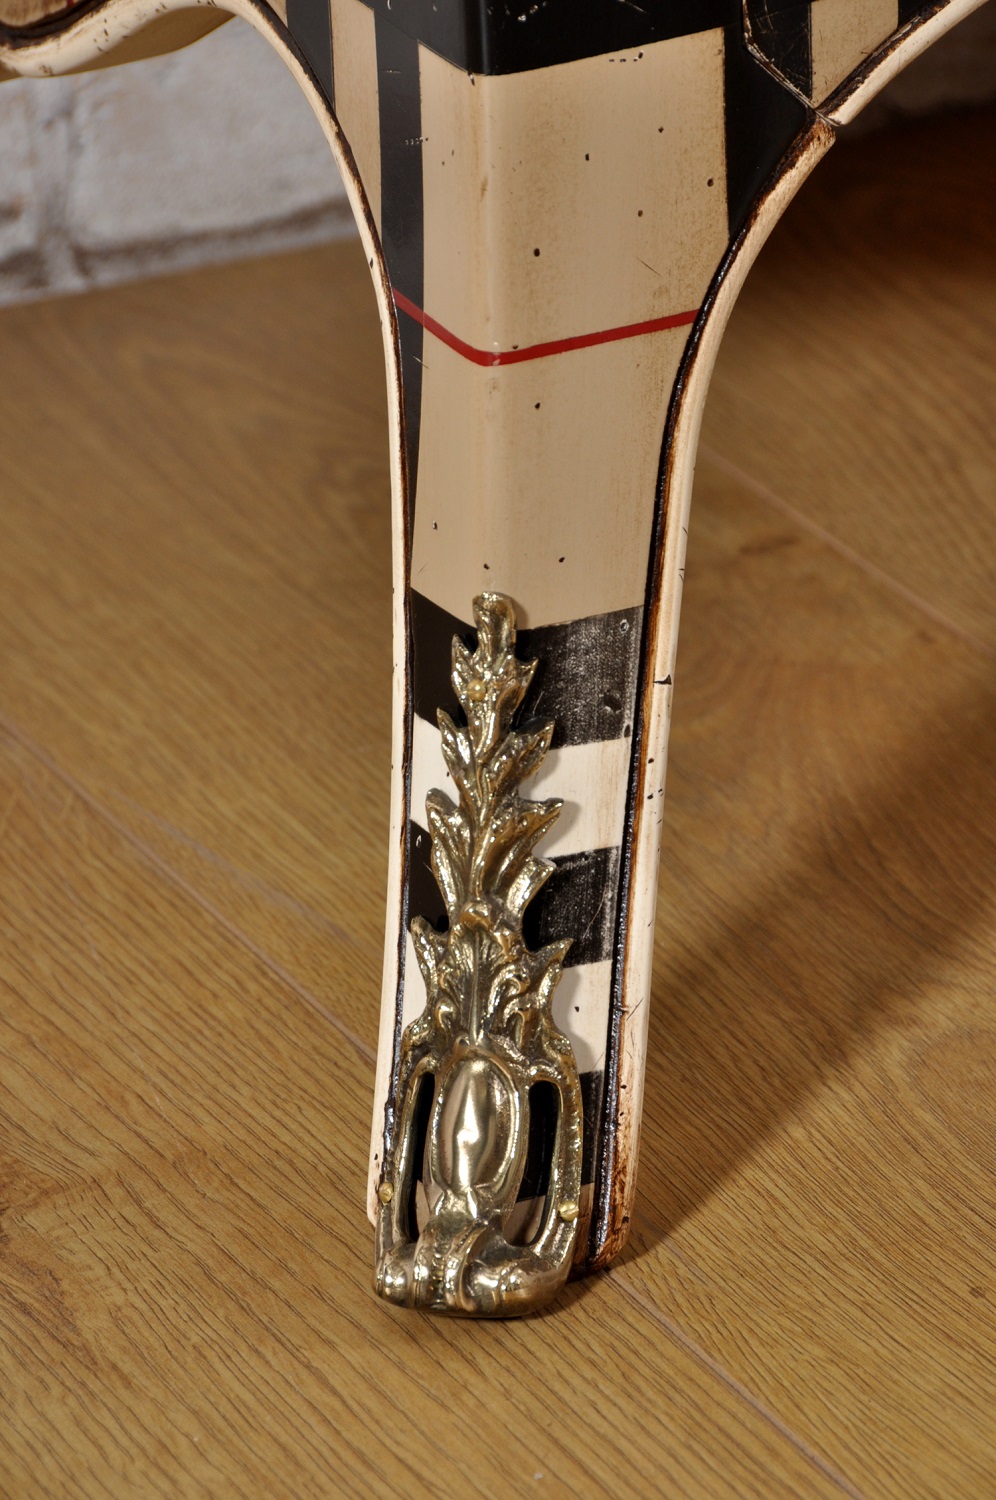 produzione credenza veneziana in stile classico essenza nobile di ciliegio gambe alte sagomate in stile Luigi XV settecento forme eleganti